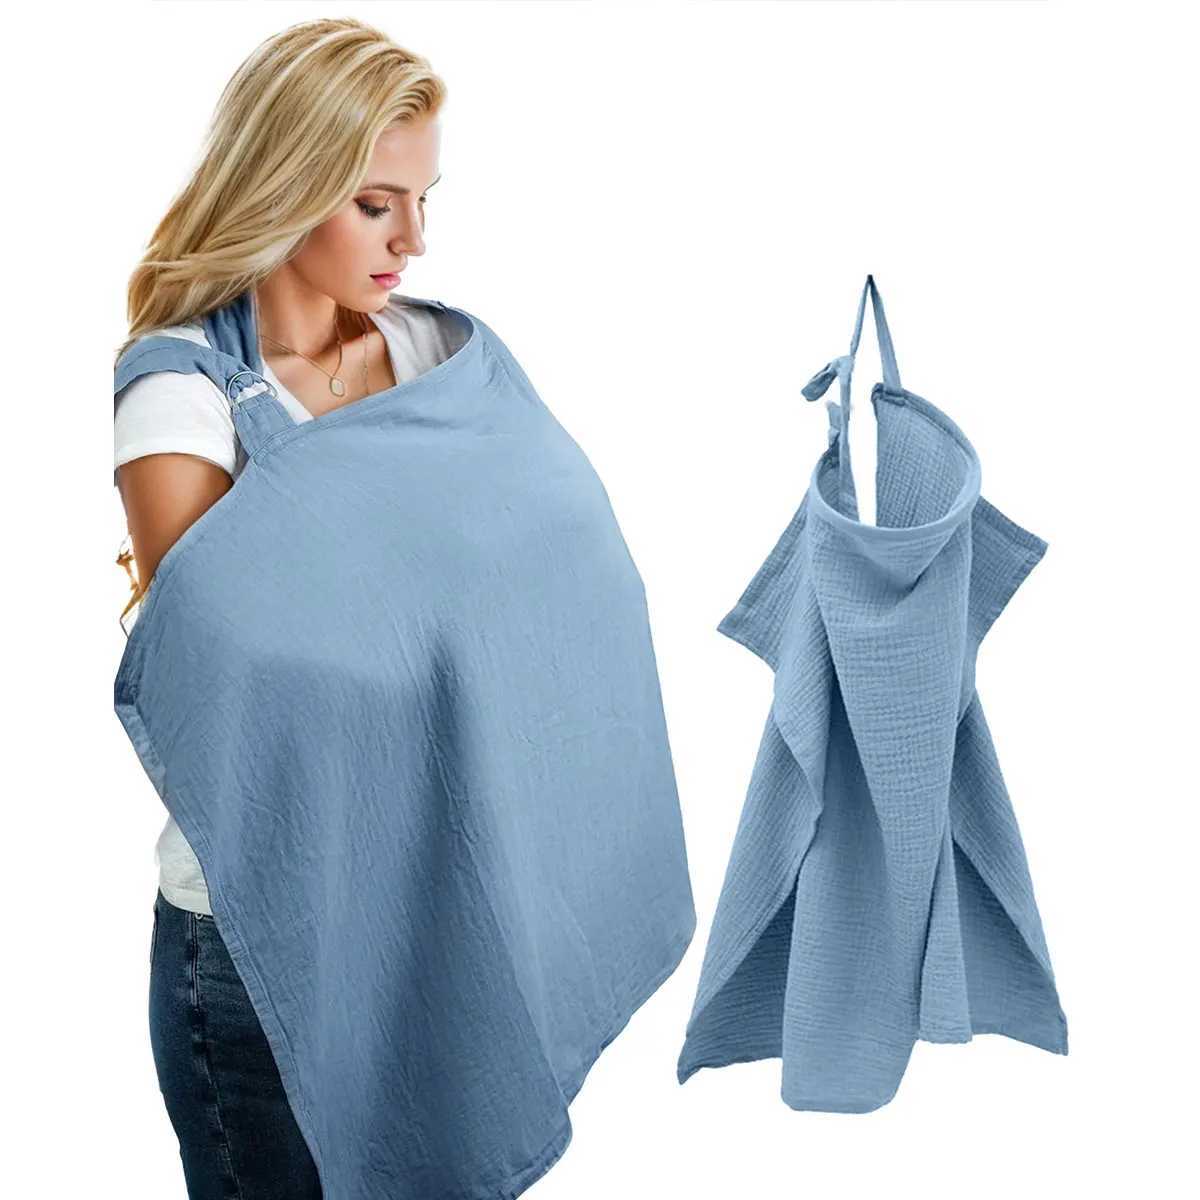 看護カバー母乳育児タオルと覆いと、母乳育児に出かけるときの光の漏れを防ぐ。ベビーカー用の偽のシールドクロスサンY240517